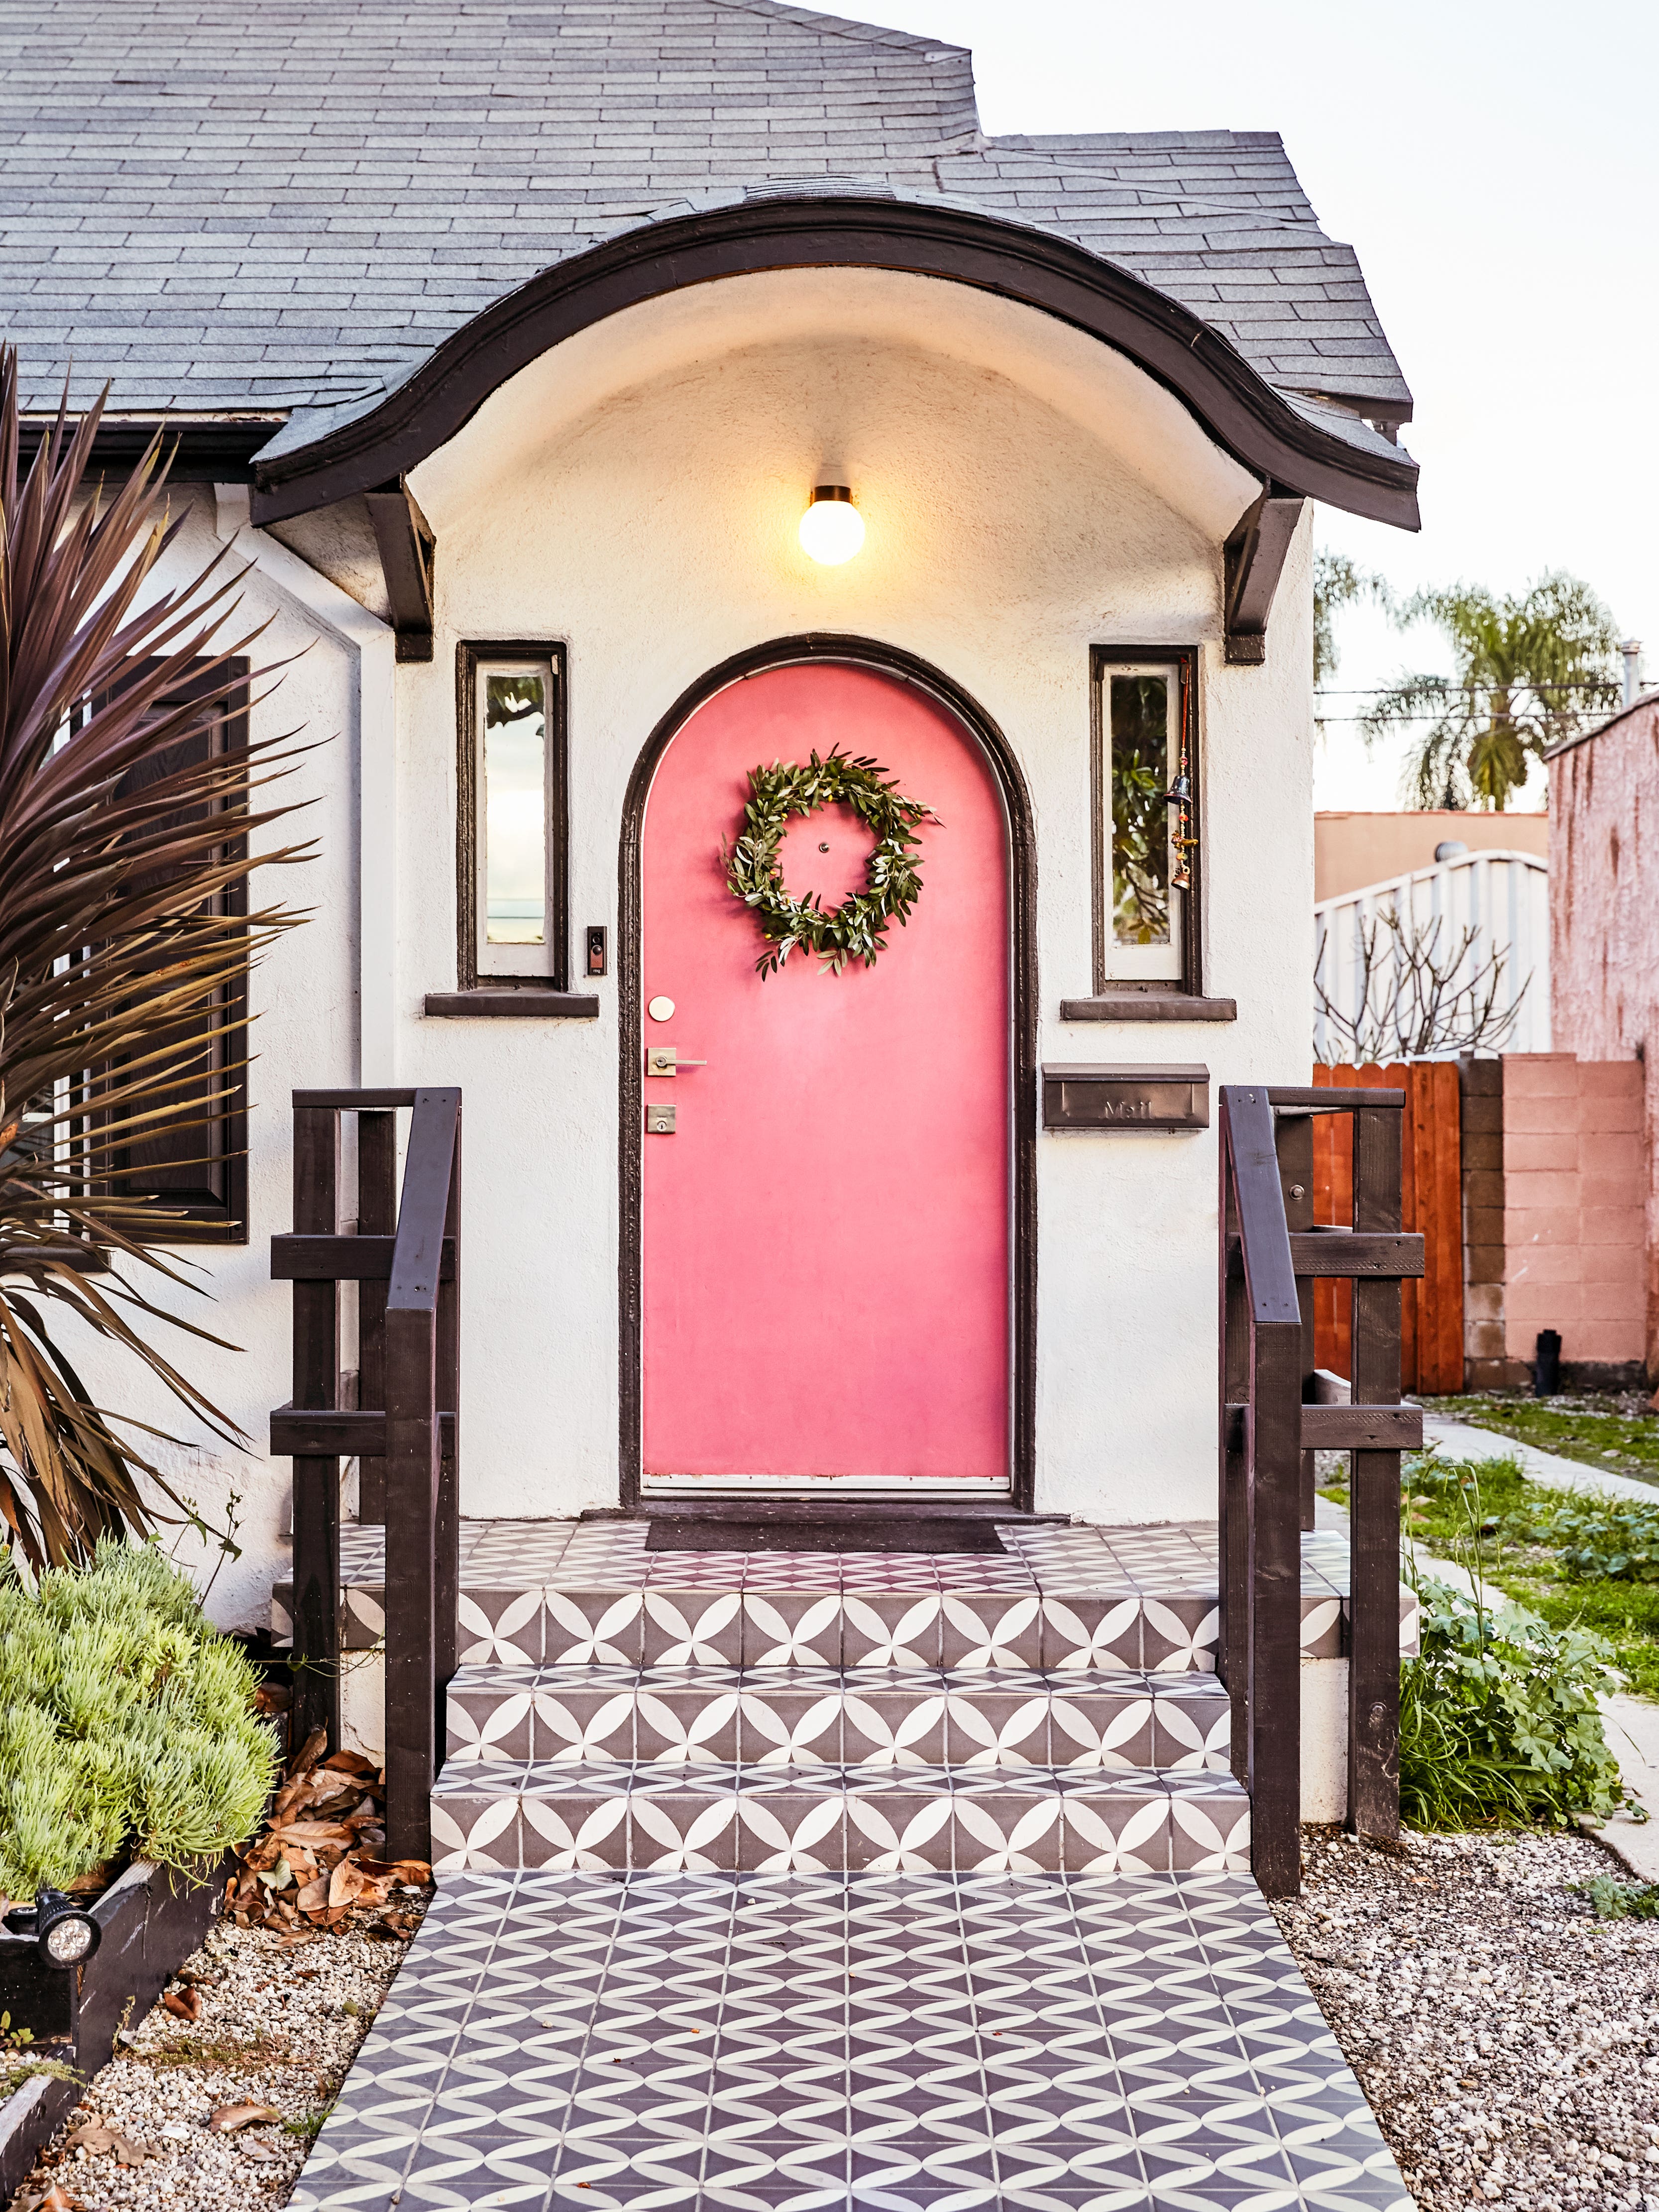 Home with pink front door